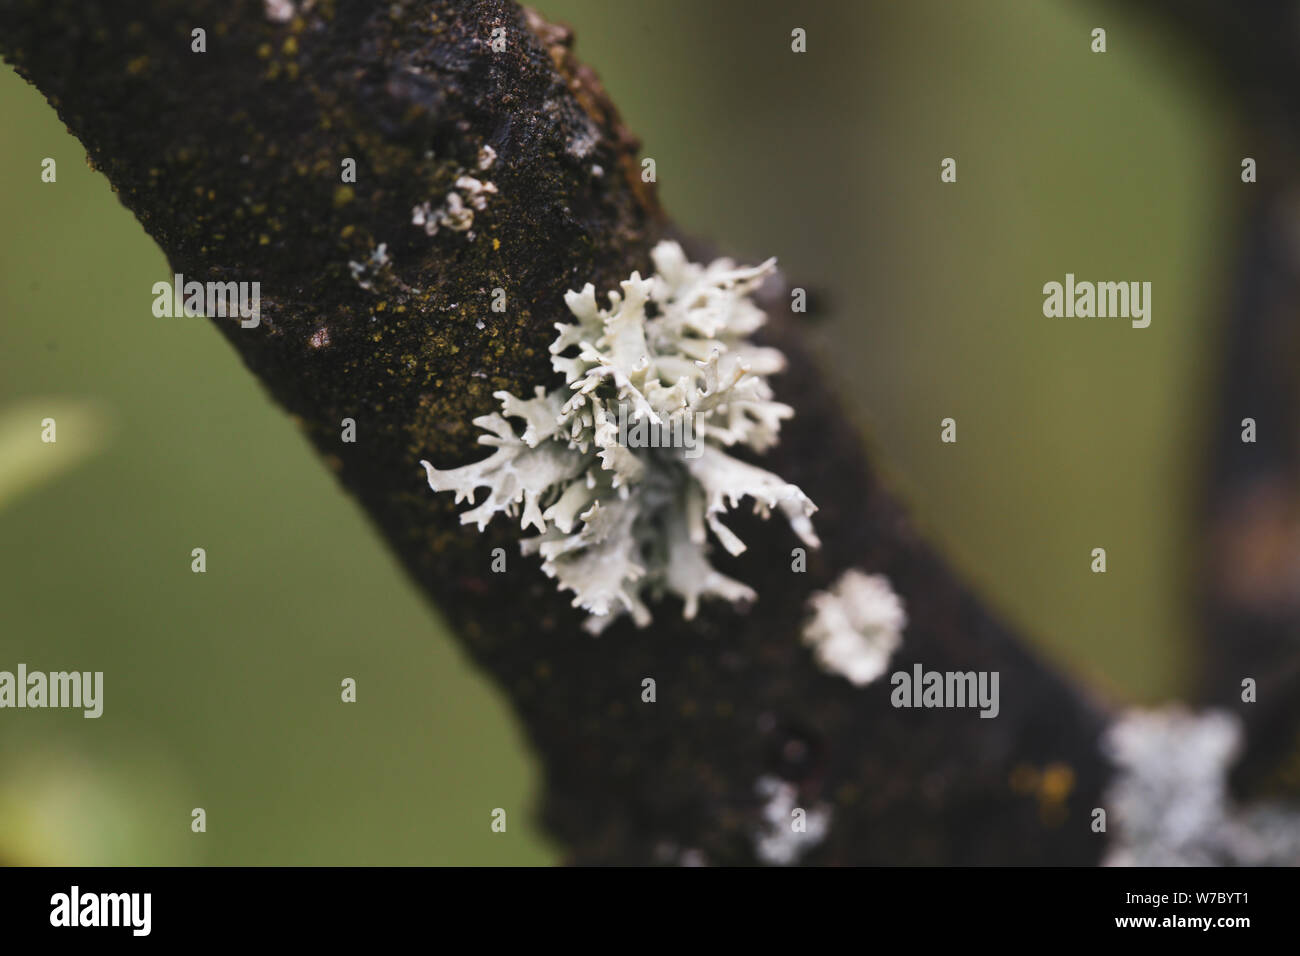 Macro photography with gray tree fungus Stock Photo